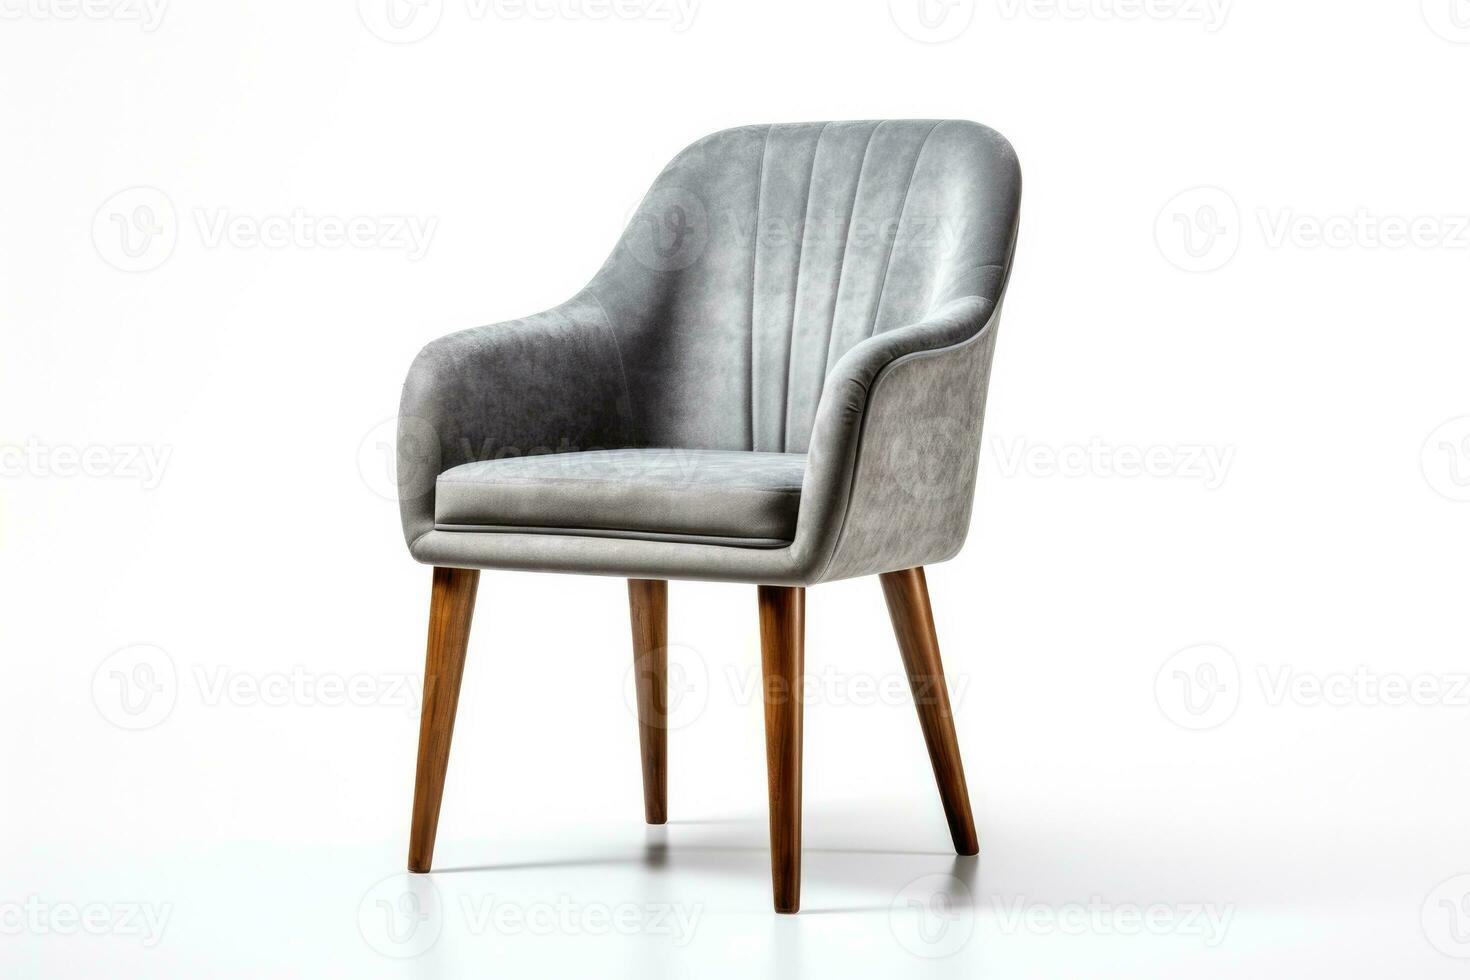 raffinerad dining rum stol förkroppsligande minimalistisk elegans isolerat på en vit bakgrund foto